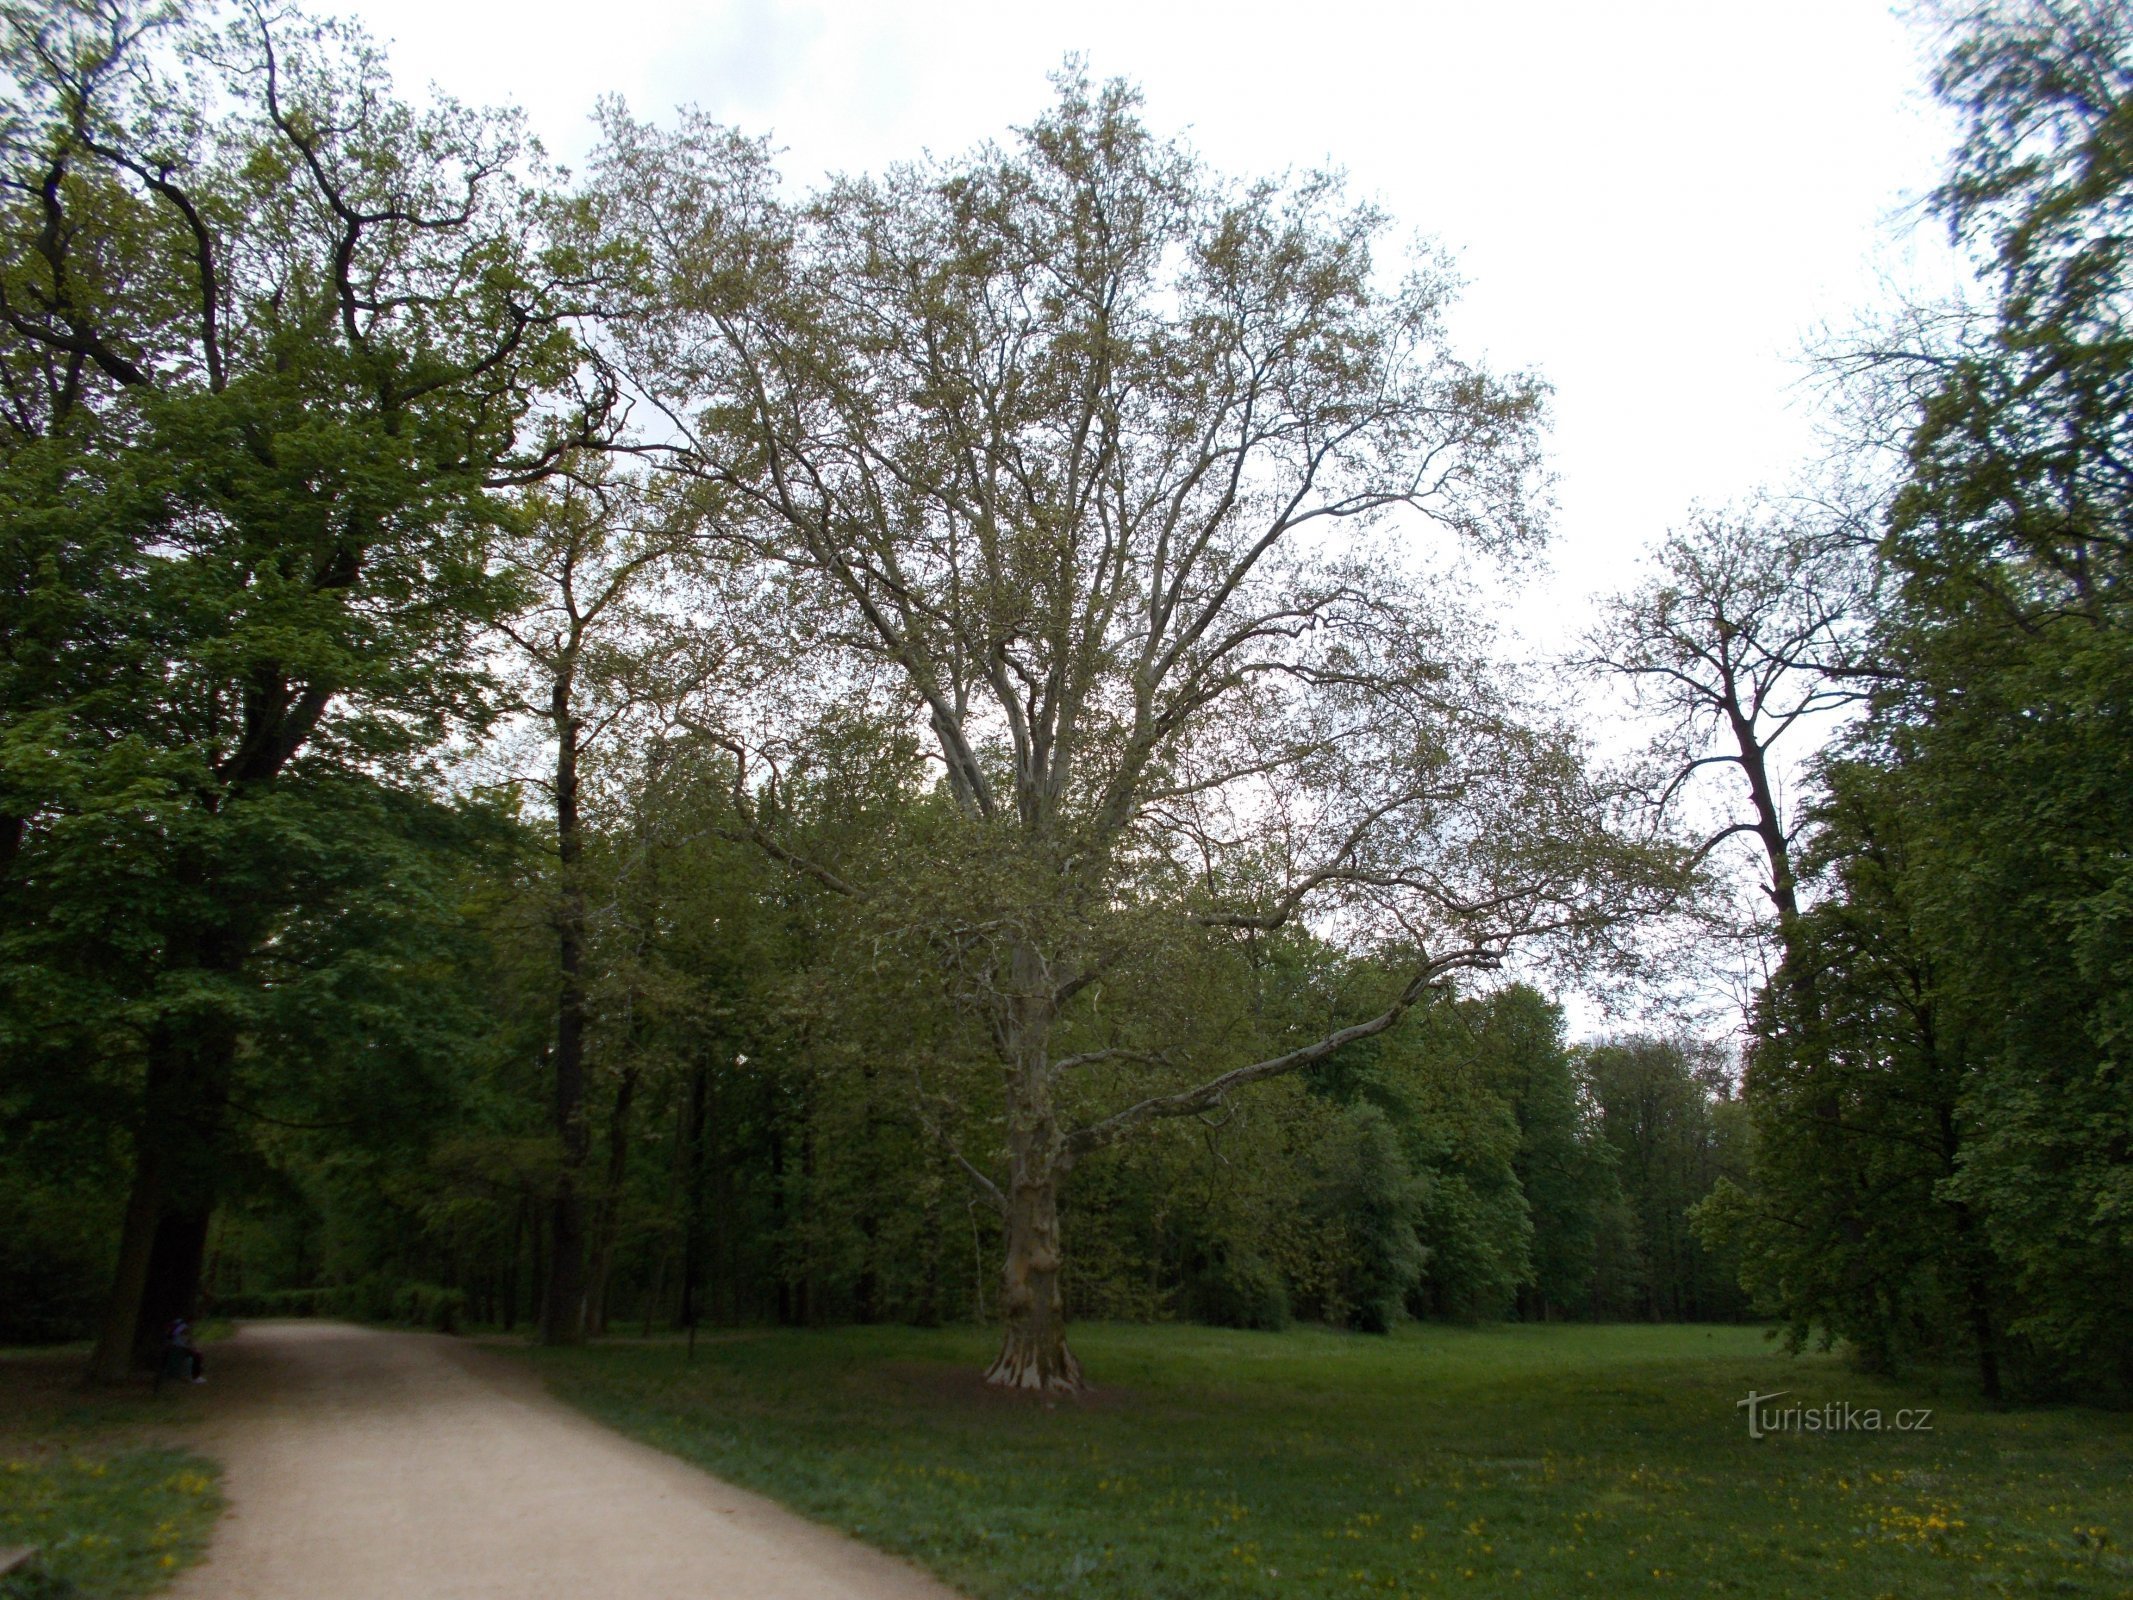 Park Zamkowy Veltrusy